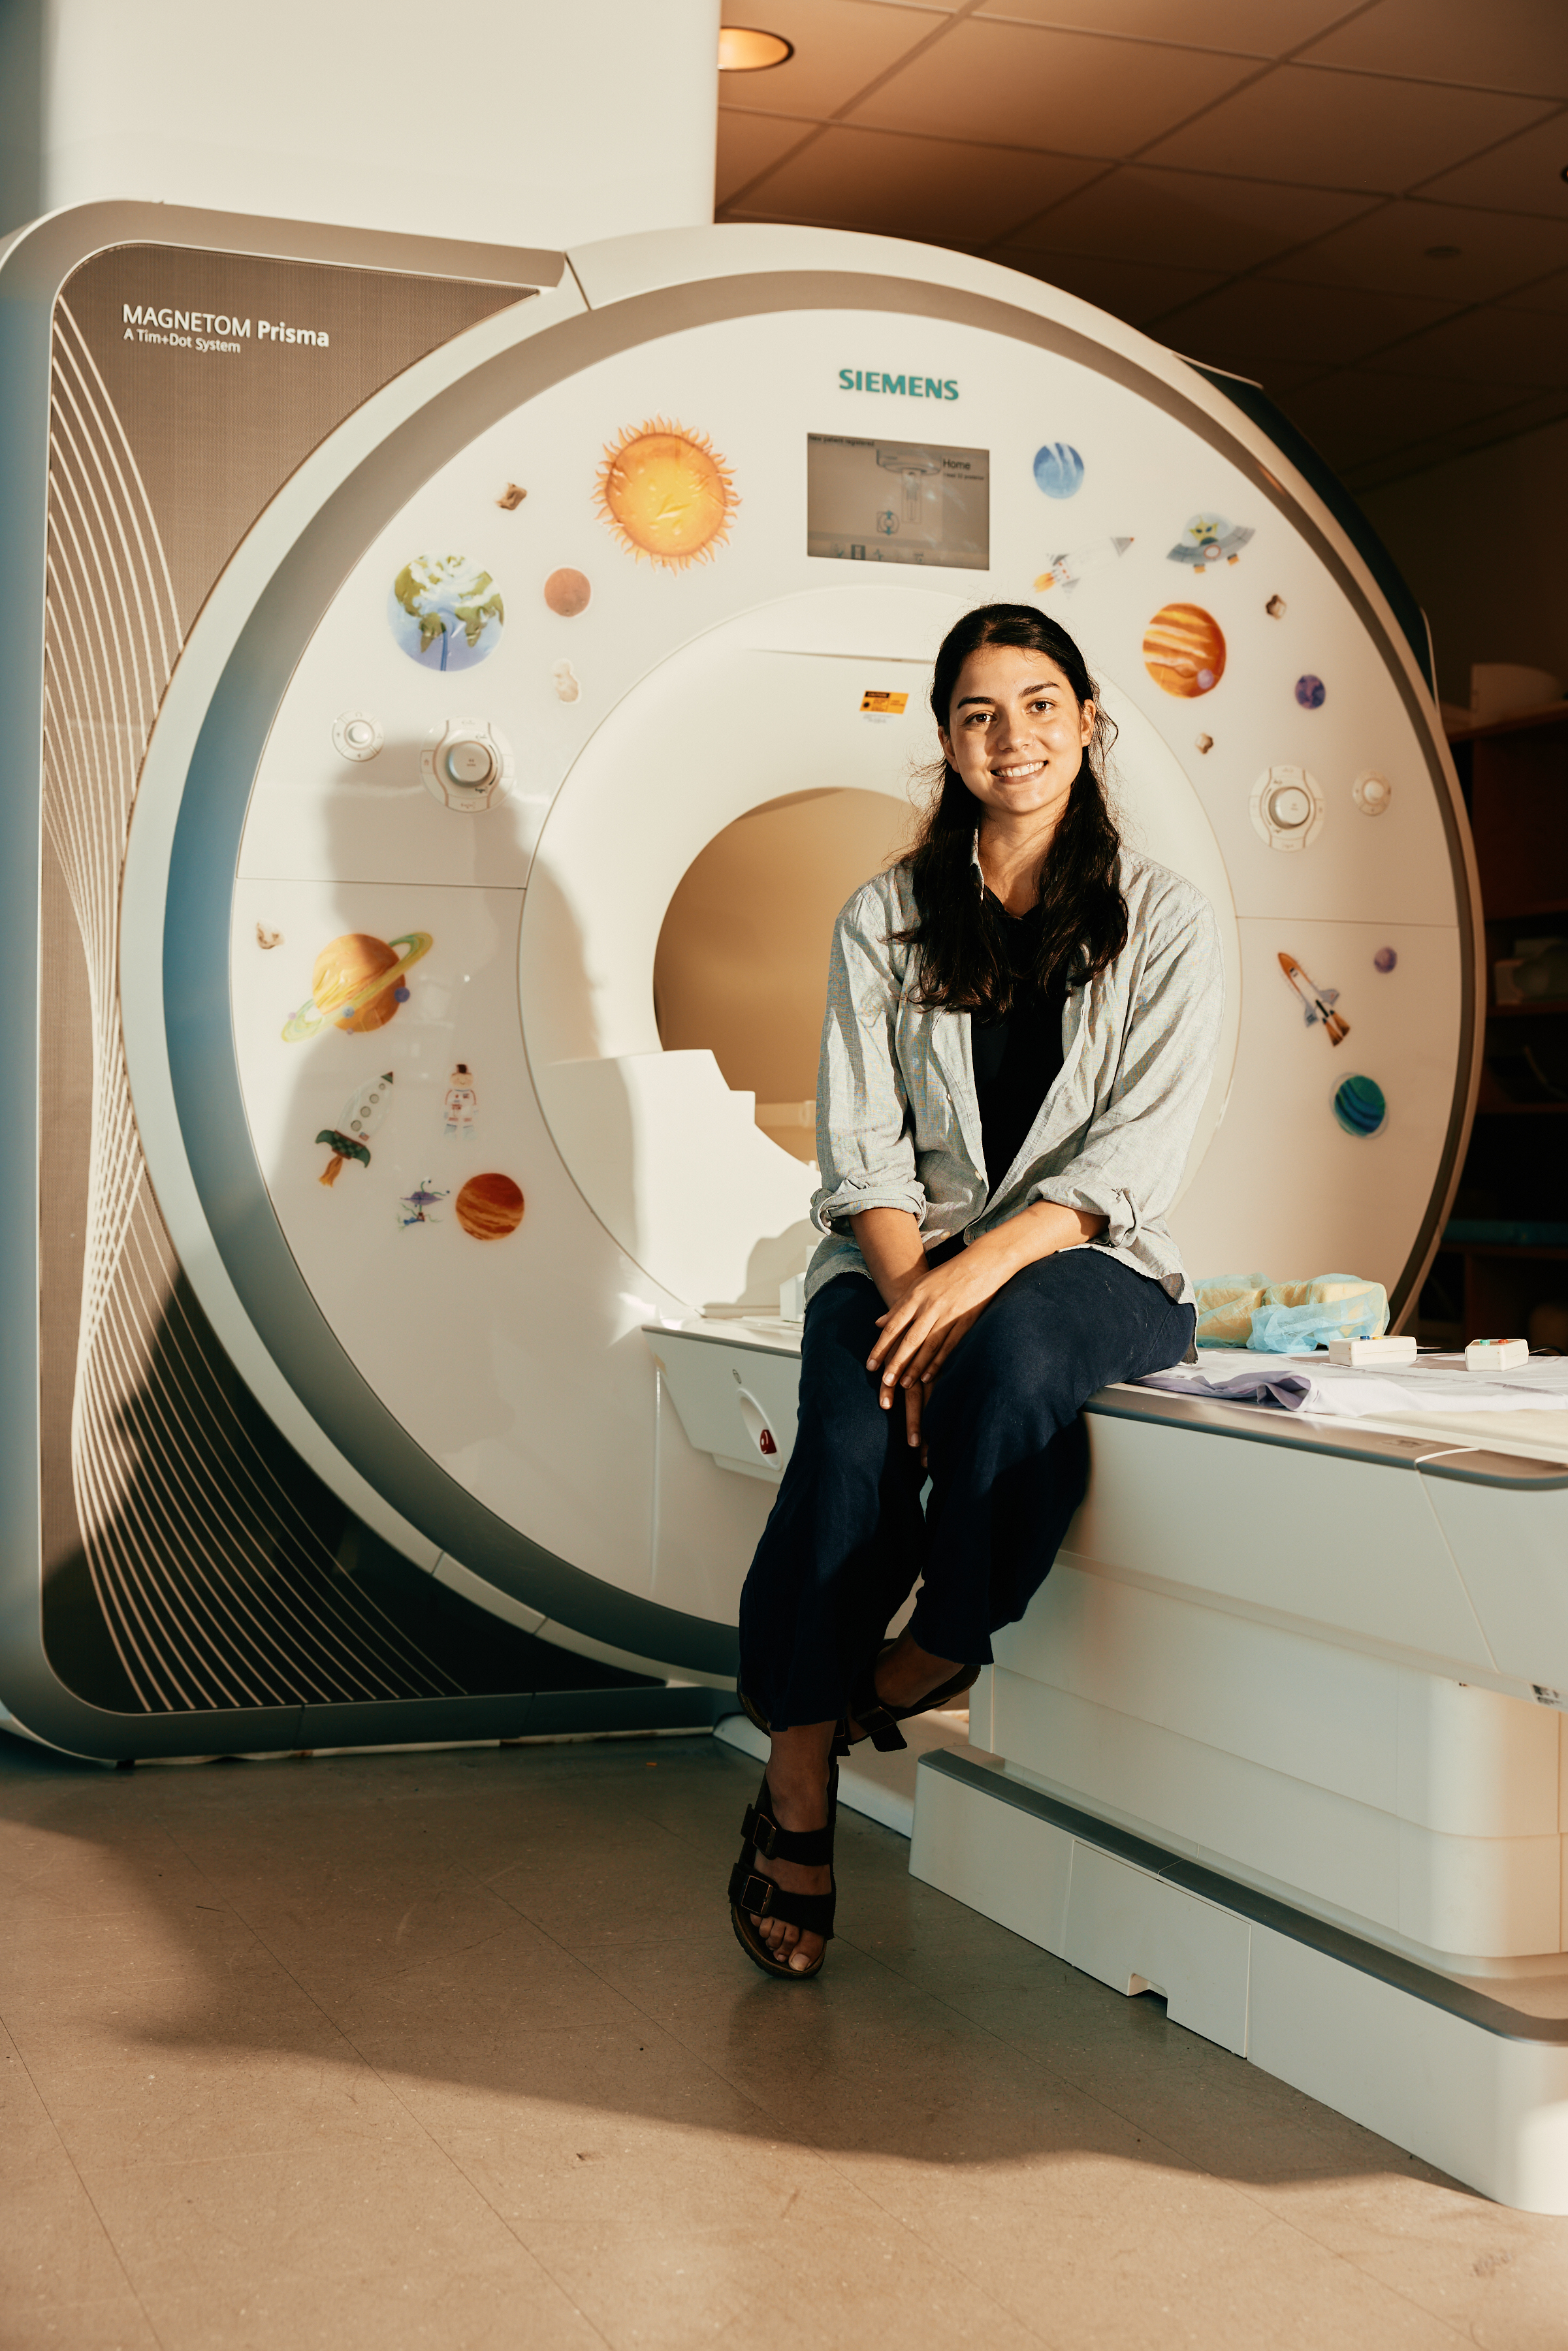 MIT Bilingual MRI